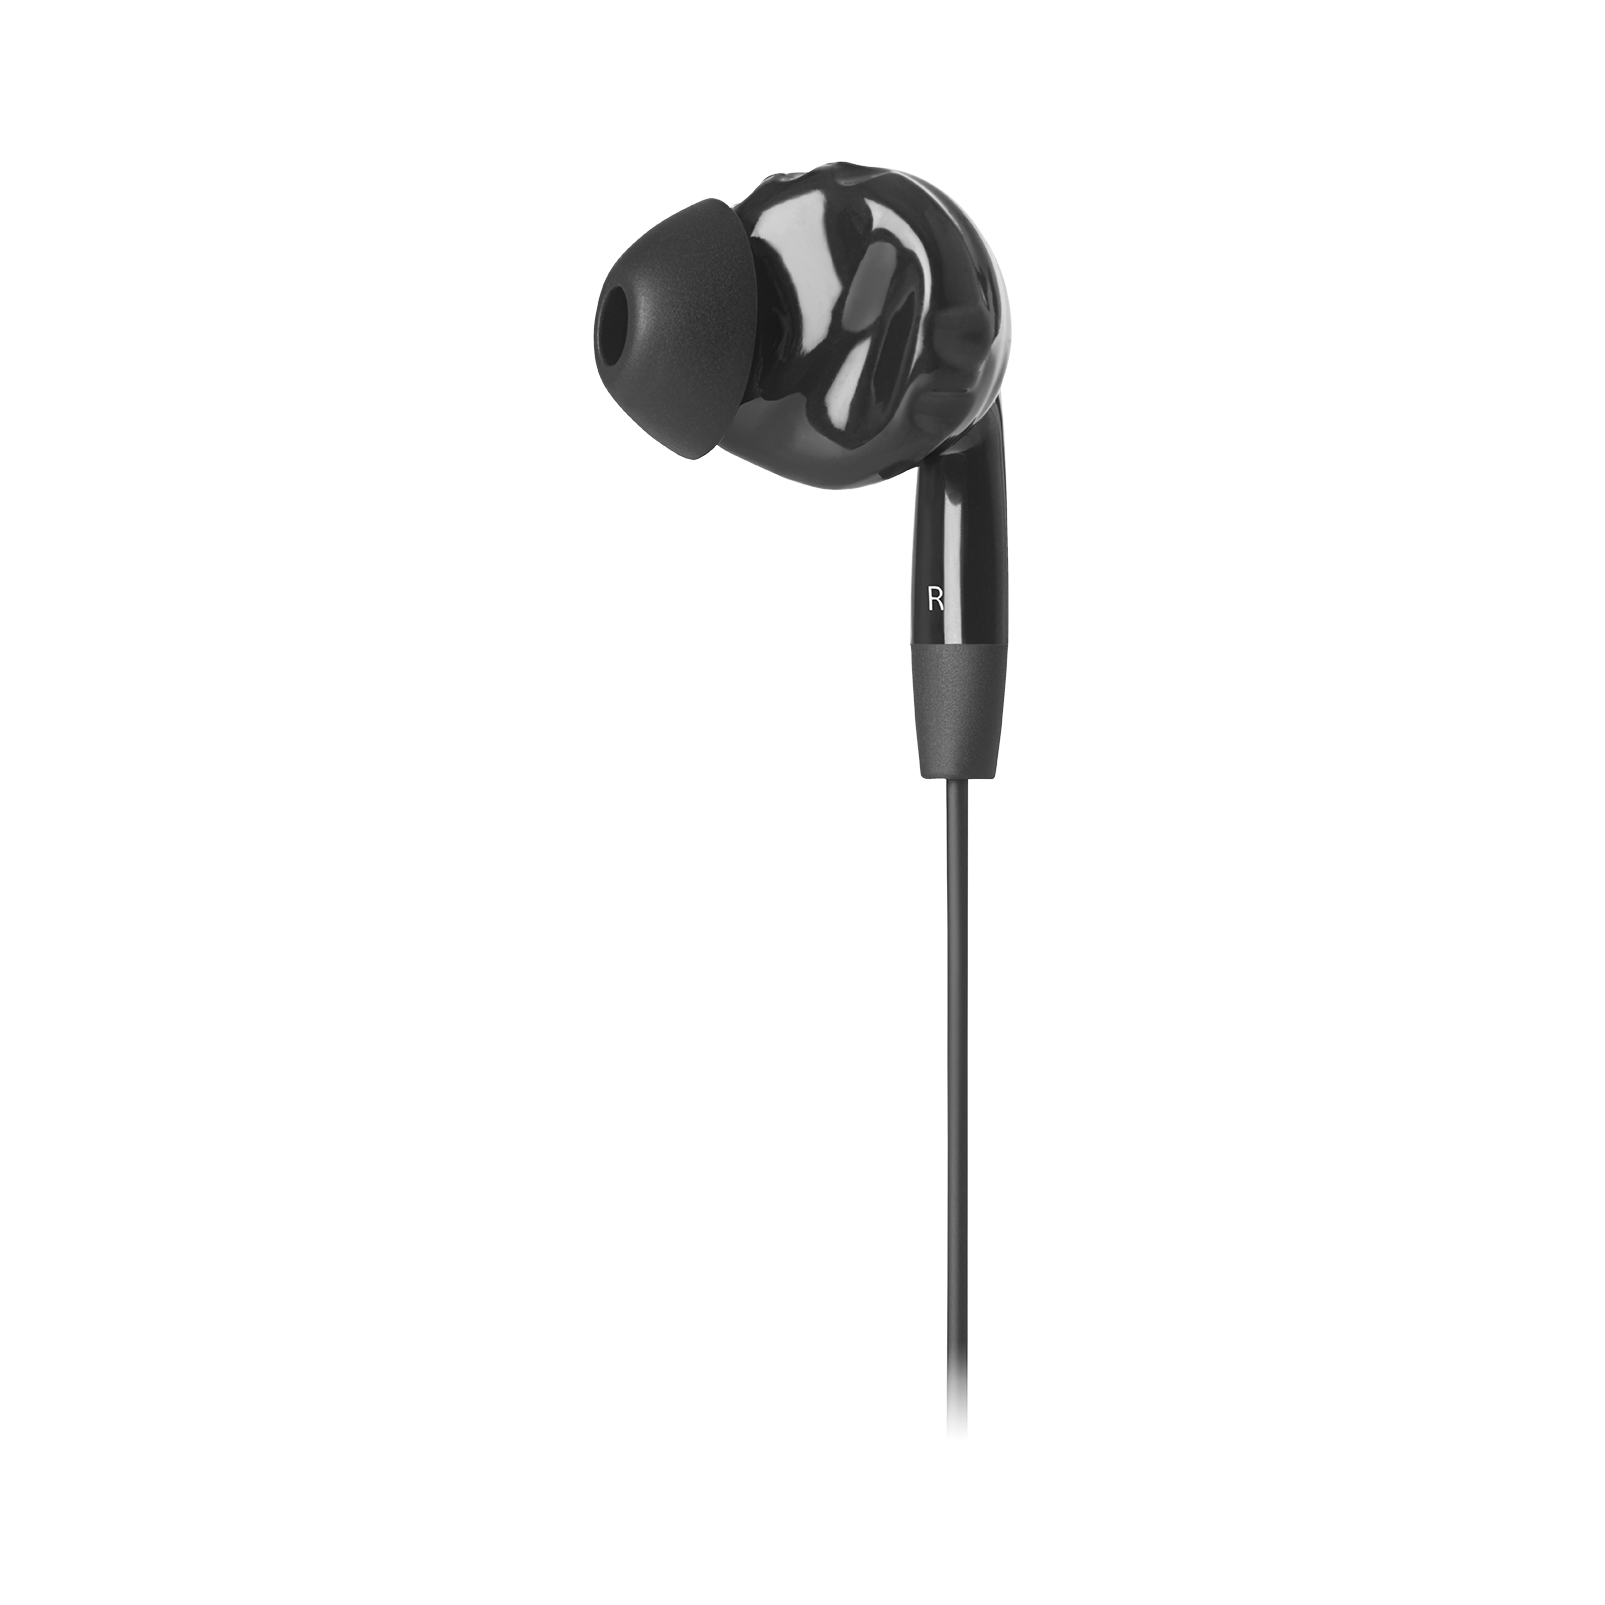 JBL Inspire 100 - Black - In-ear, sport headphones with Twistlock™ Technology. - Detailshot 2